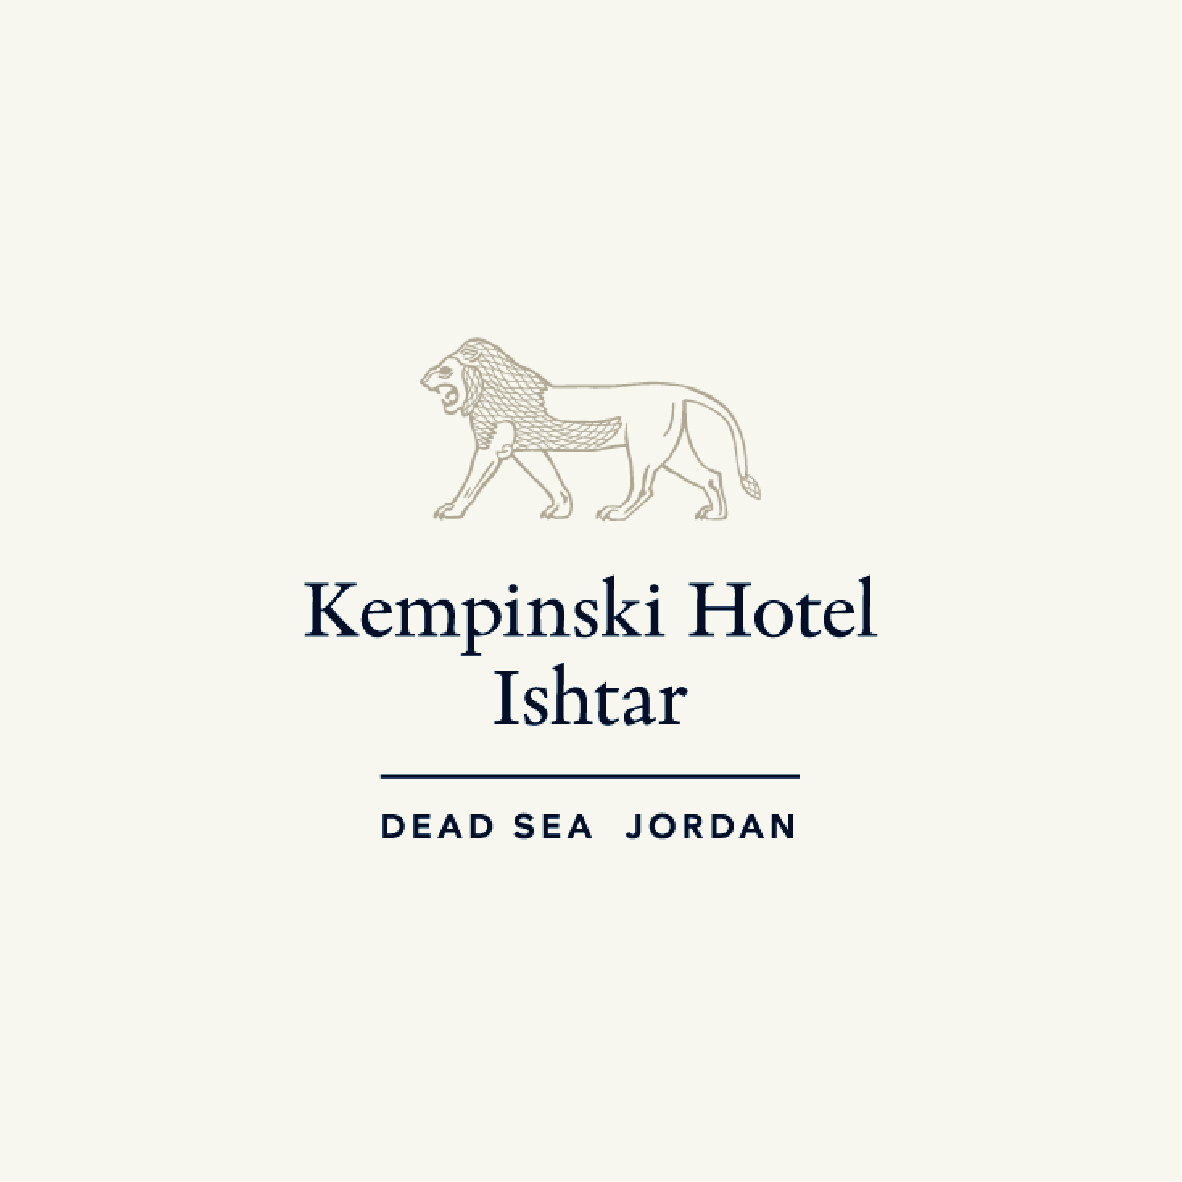 فندق كيمبنسكي البحر الميت عشتار